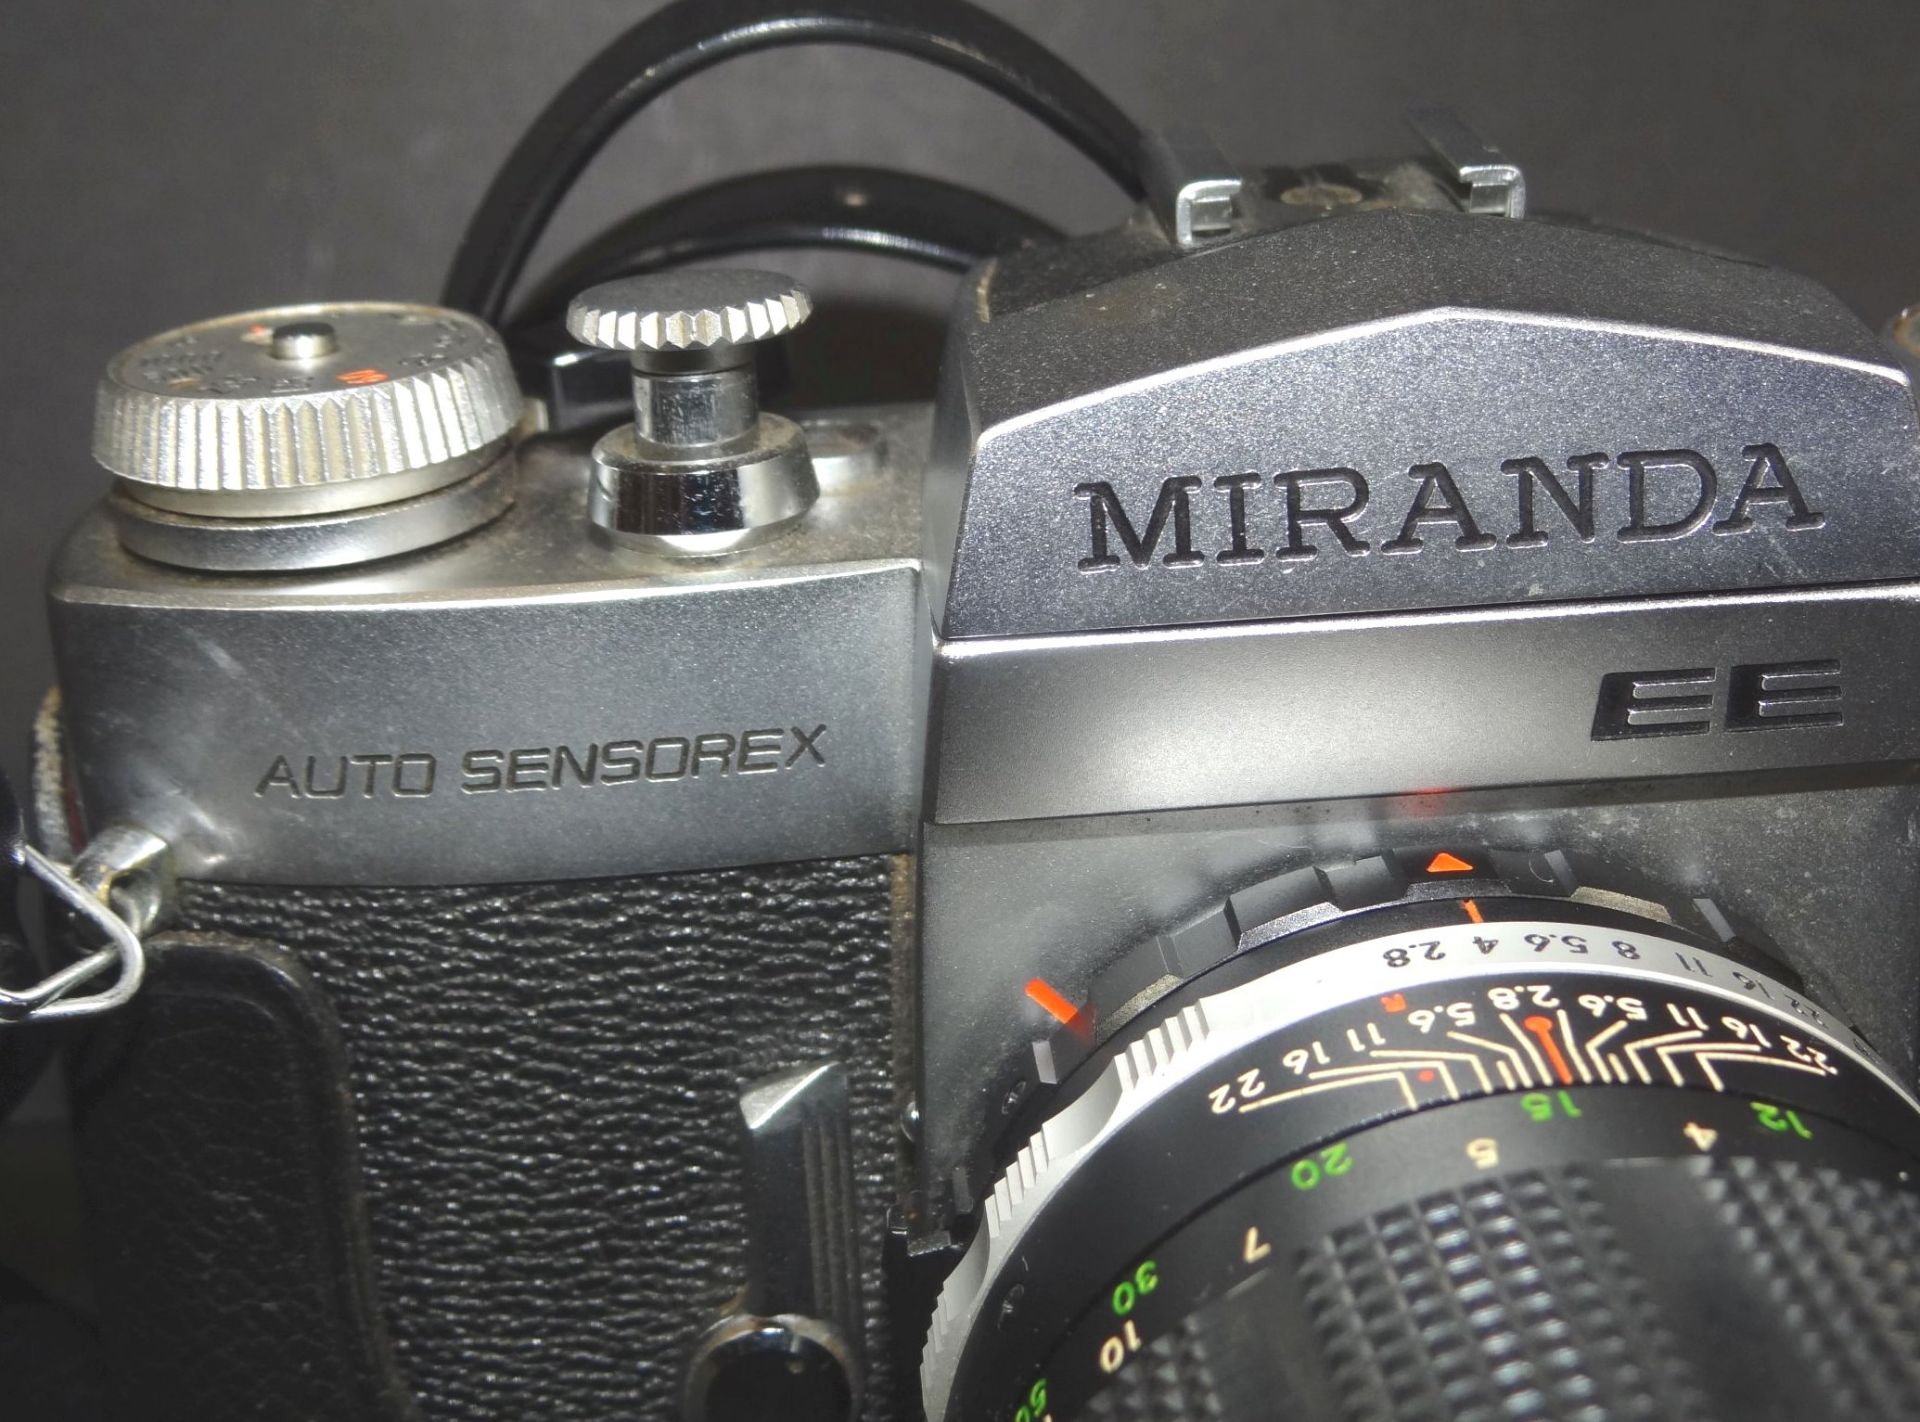 Spiegelreflex-Kamera "Miranda EE" in Alukoffer mit Zubehö- - -22.61 % buyer's premium on the - Bild 5 aus 10